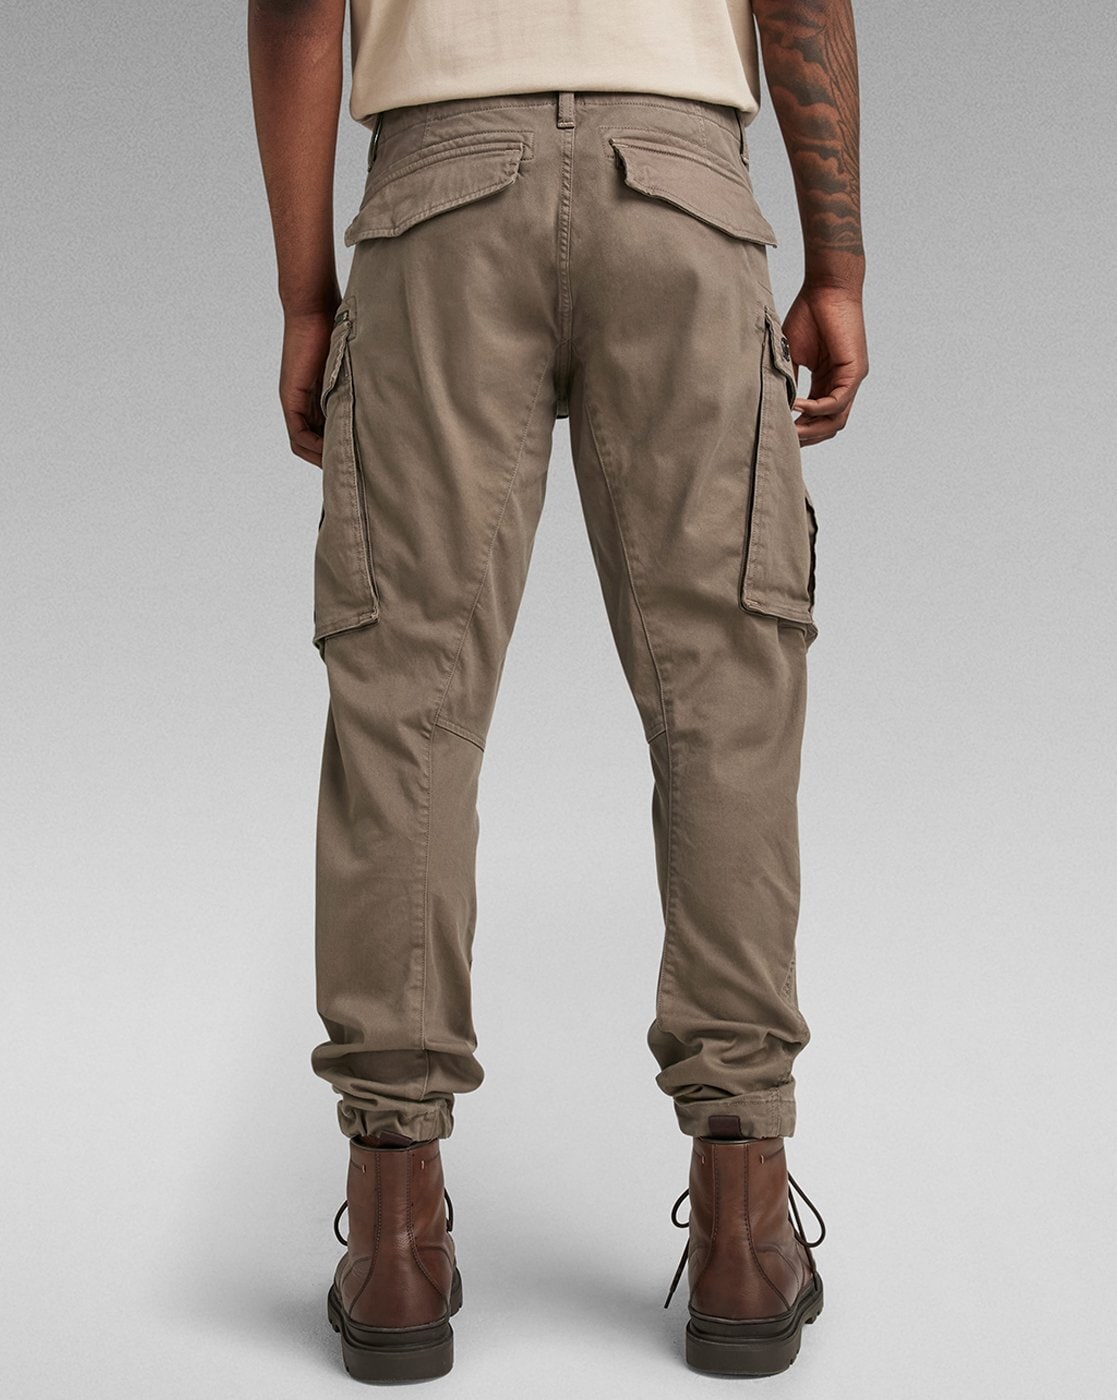 Buy Dark Olive Trousers  Pants for Men by BREAKBOUNCE Online  Ajiocom